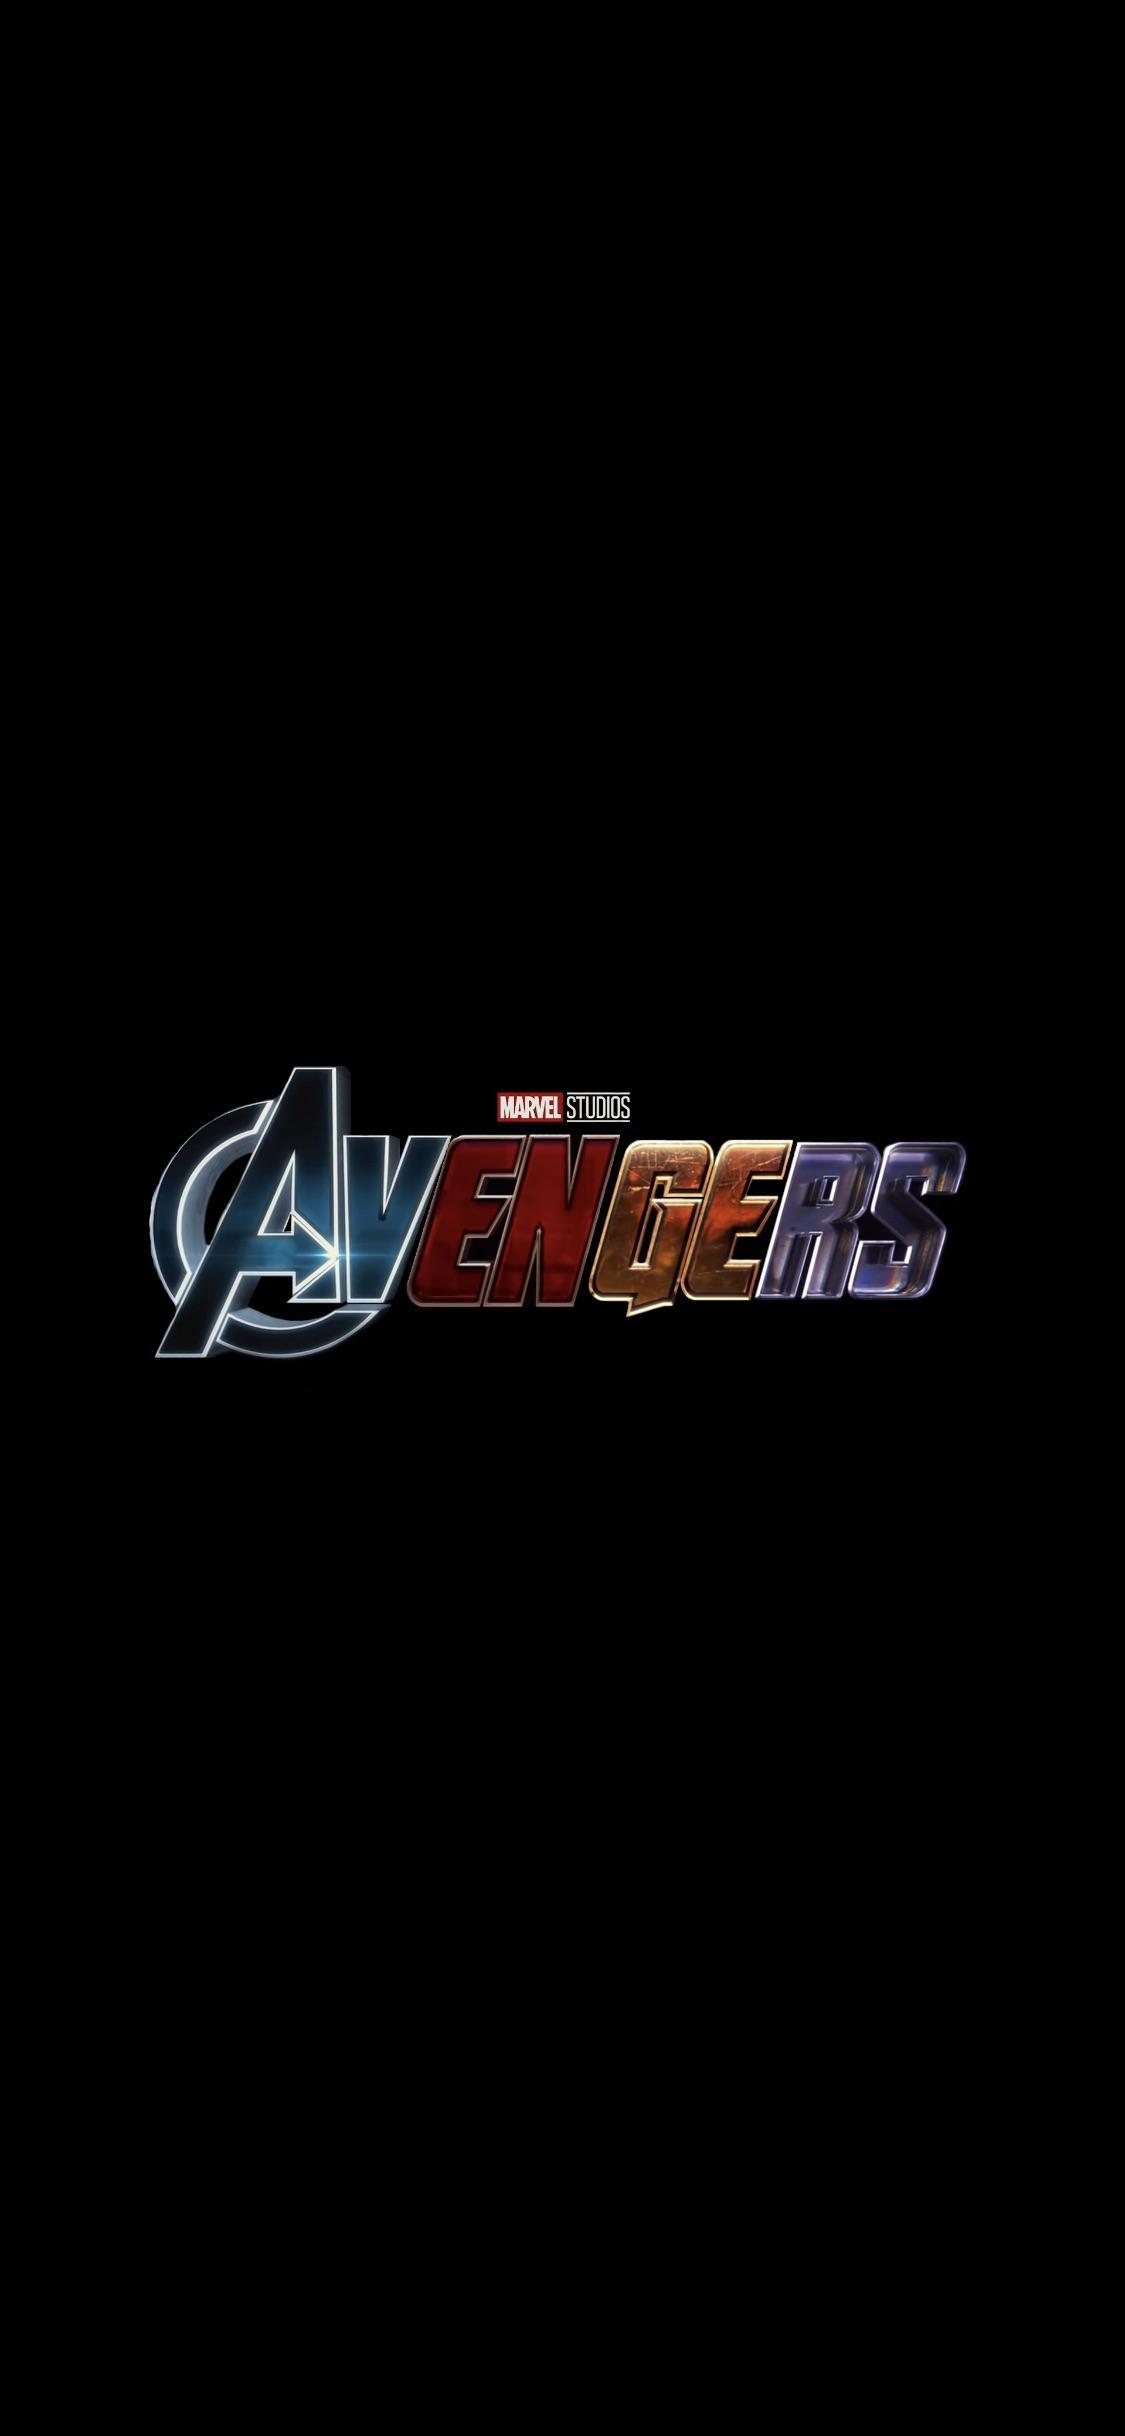 Hình nền điện thoại 1125x2436 với tất cả bốn biểu tượng Avengers được hàn lại với nhau